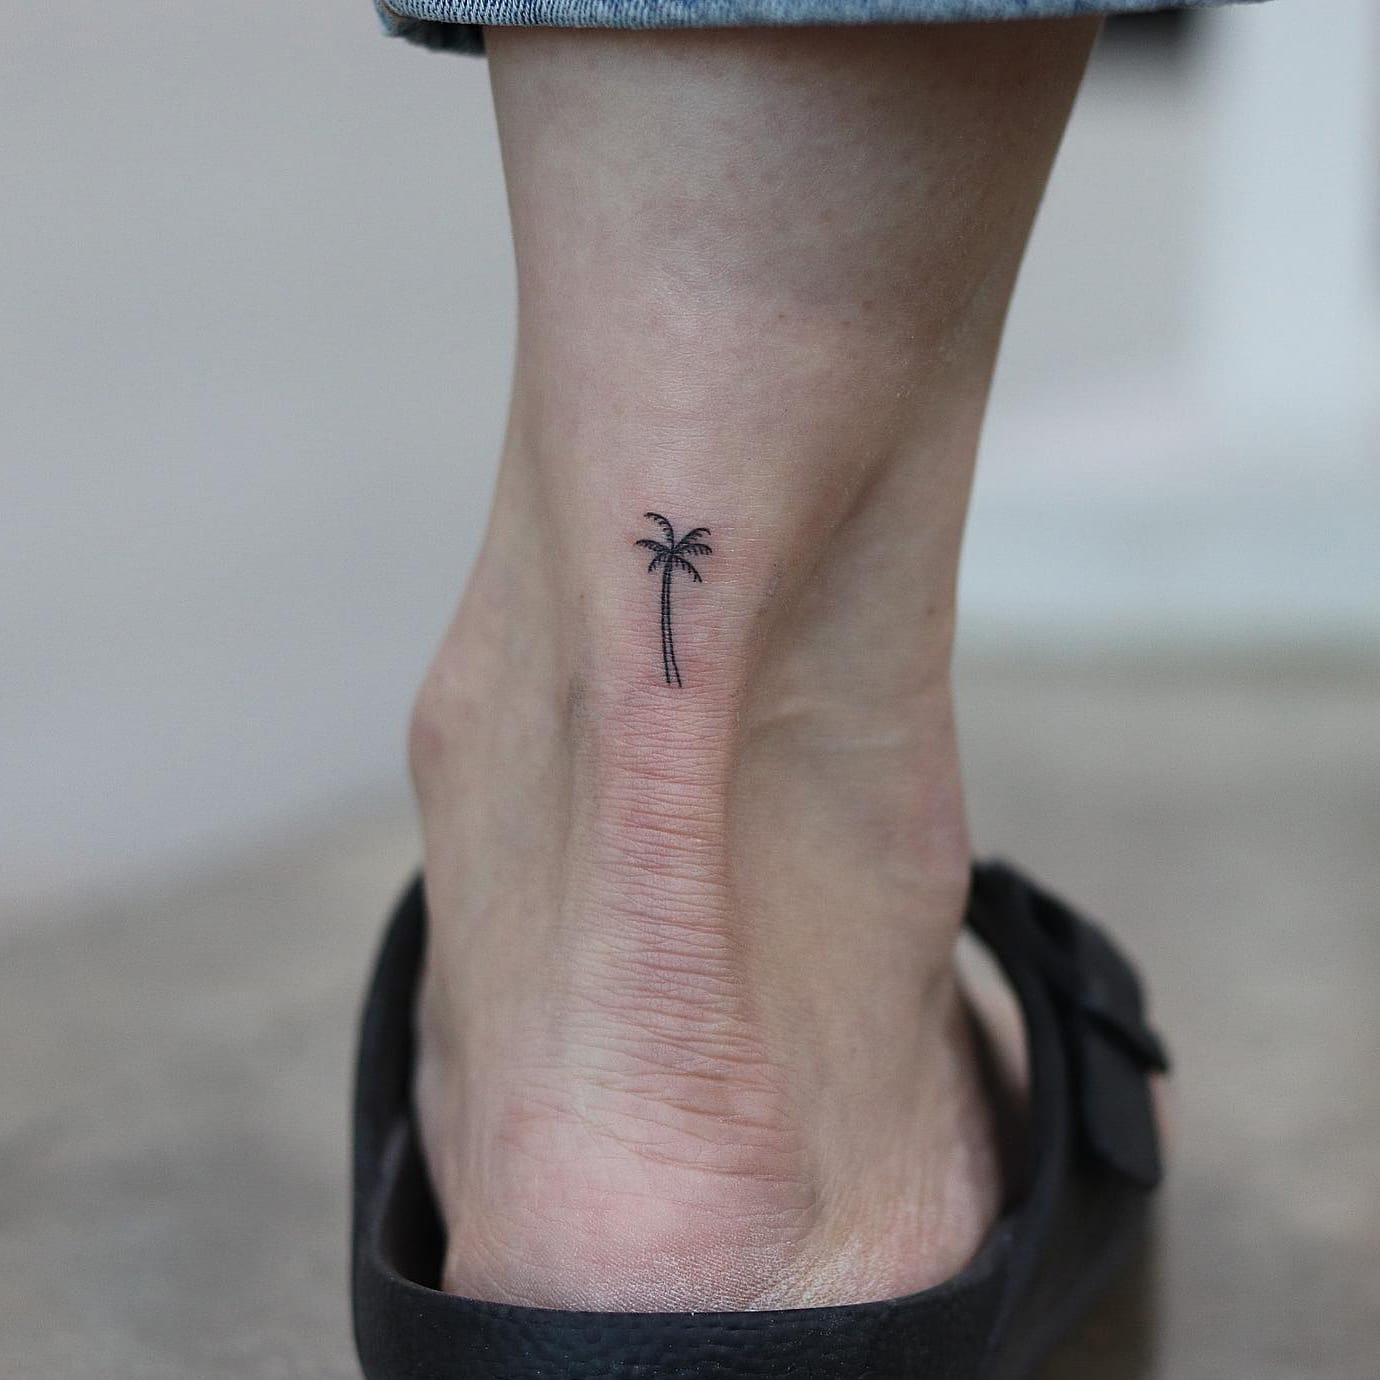 Small palm tree tattoo